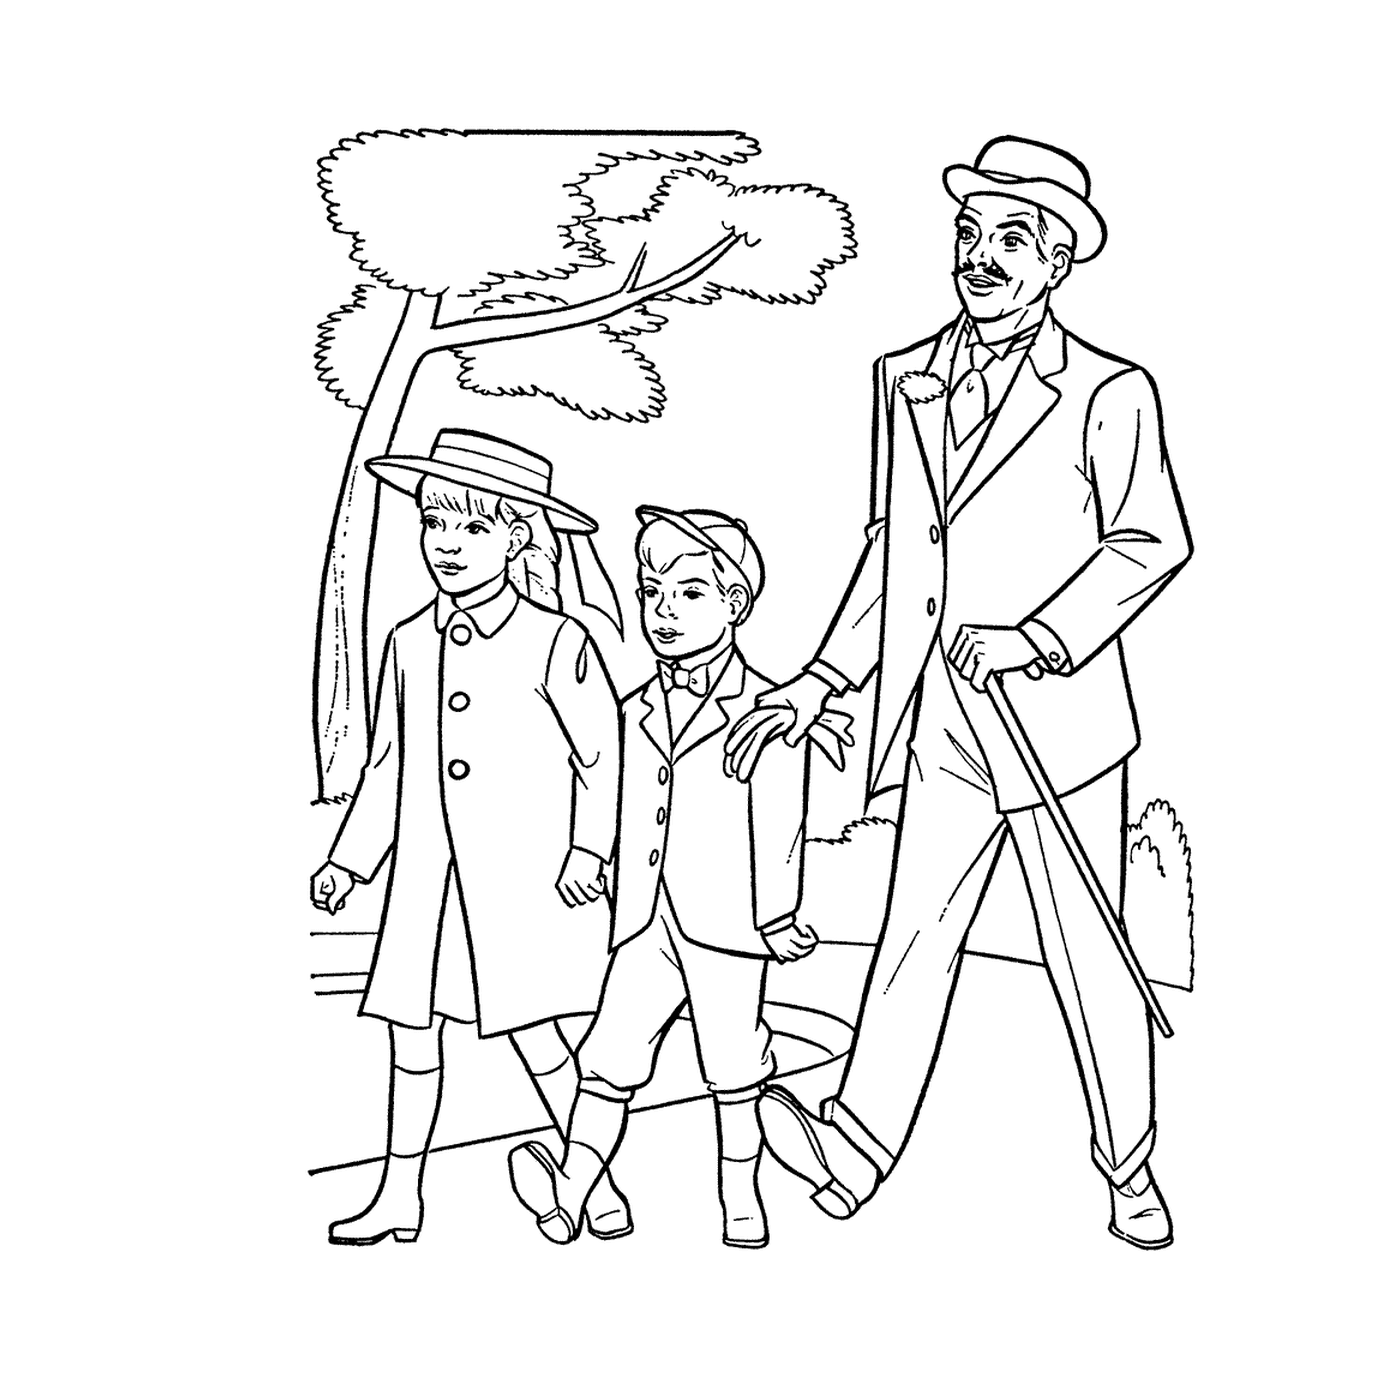  Un uomo e due bambini 